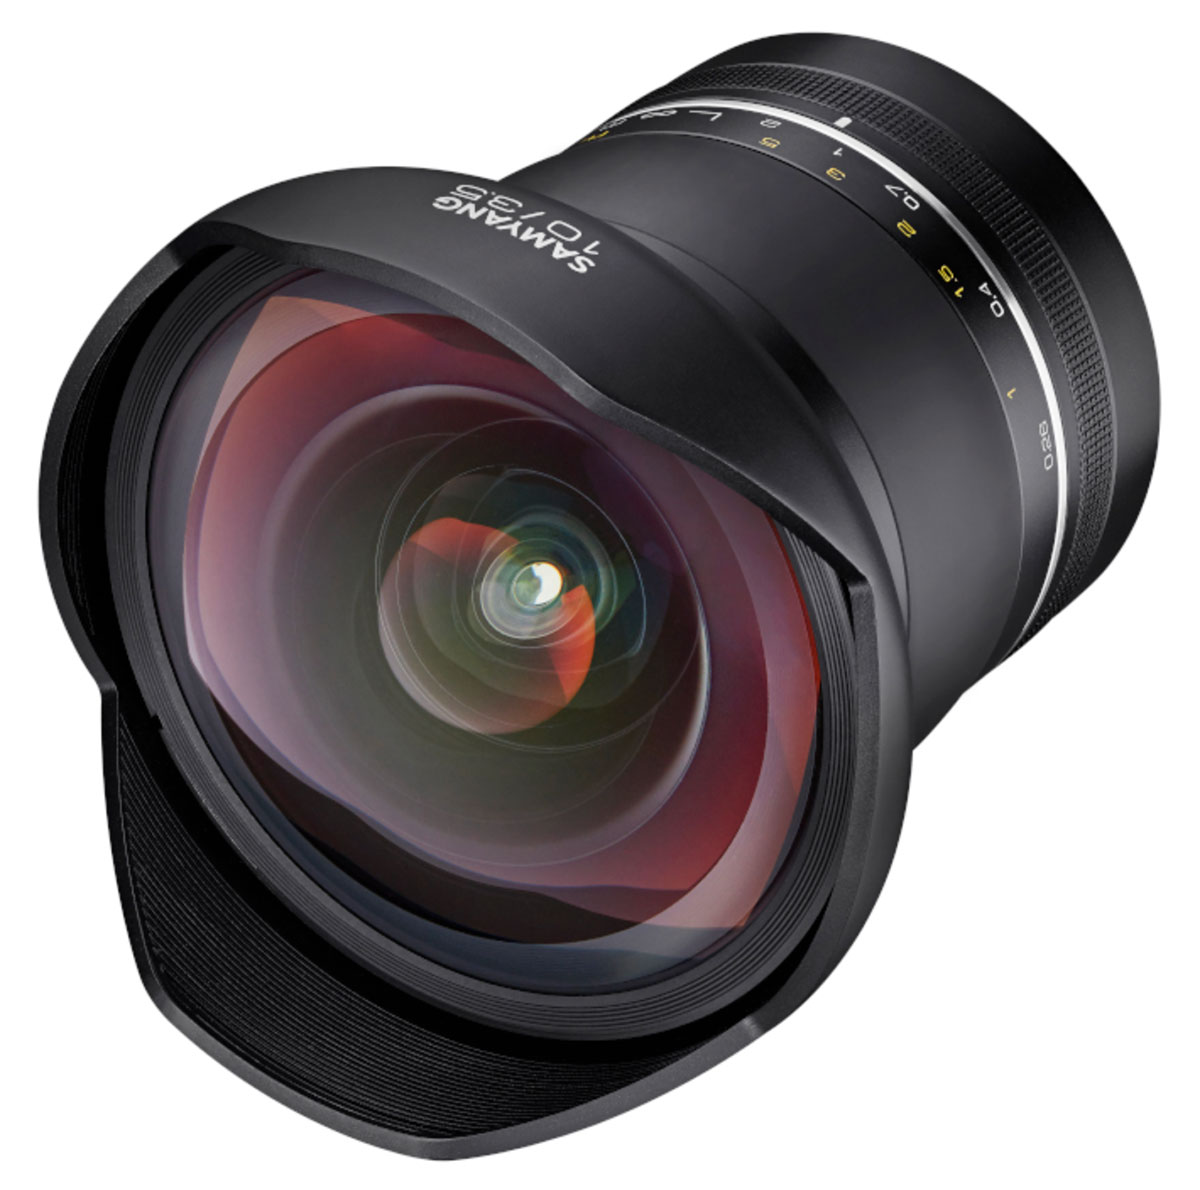 Annunciato il Samyang XP 10mm f/3.5 per reflex Full Frame Canon e Nikon